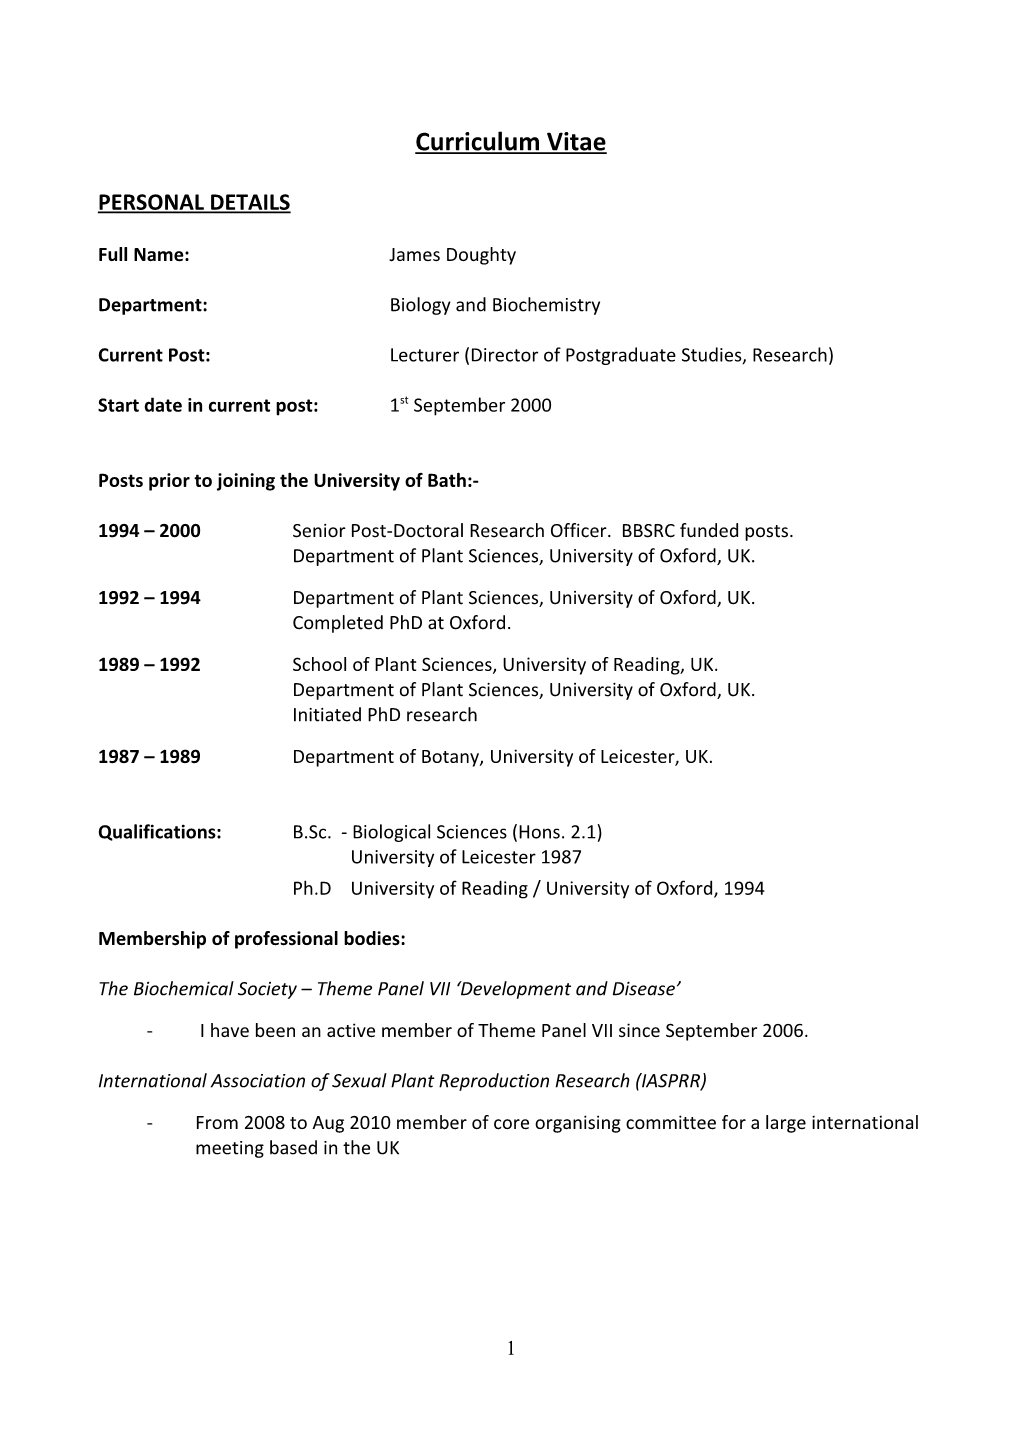 Dr James Doughty - Brief CV